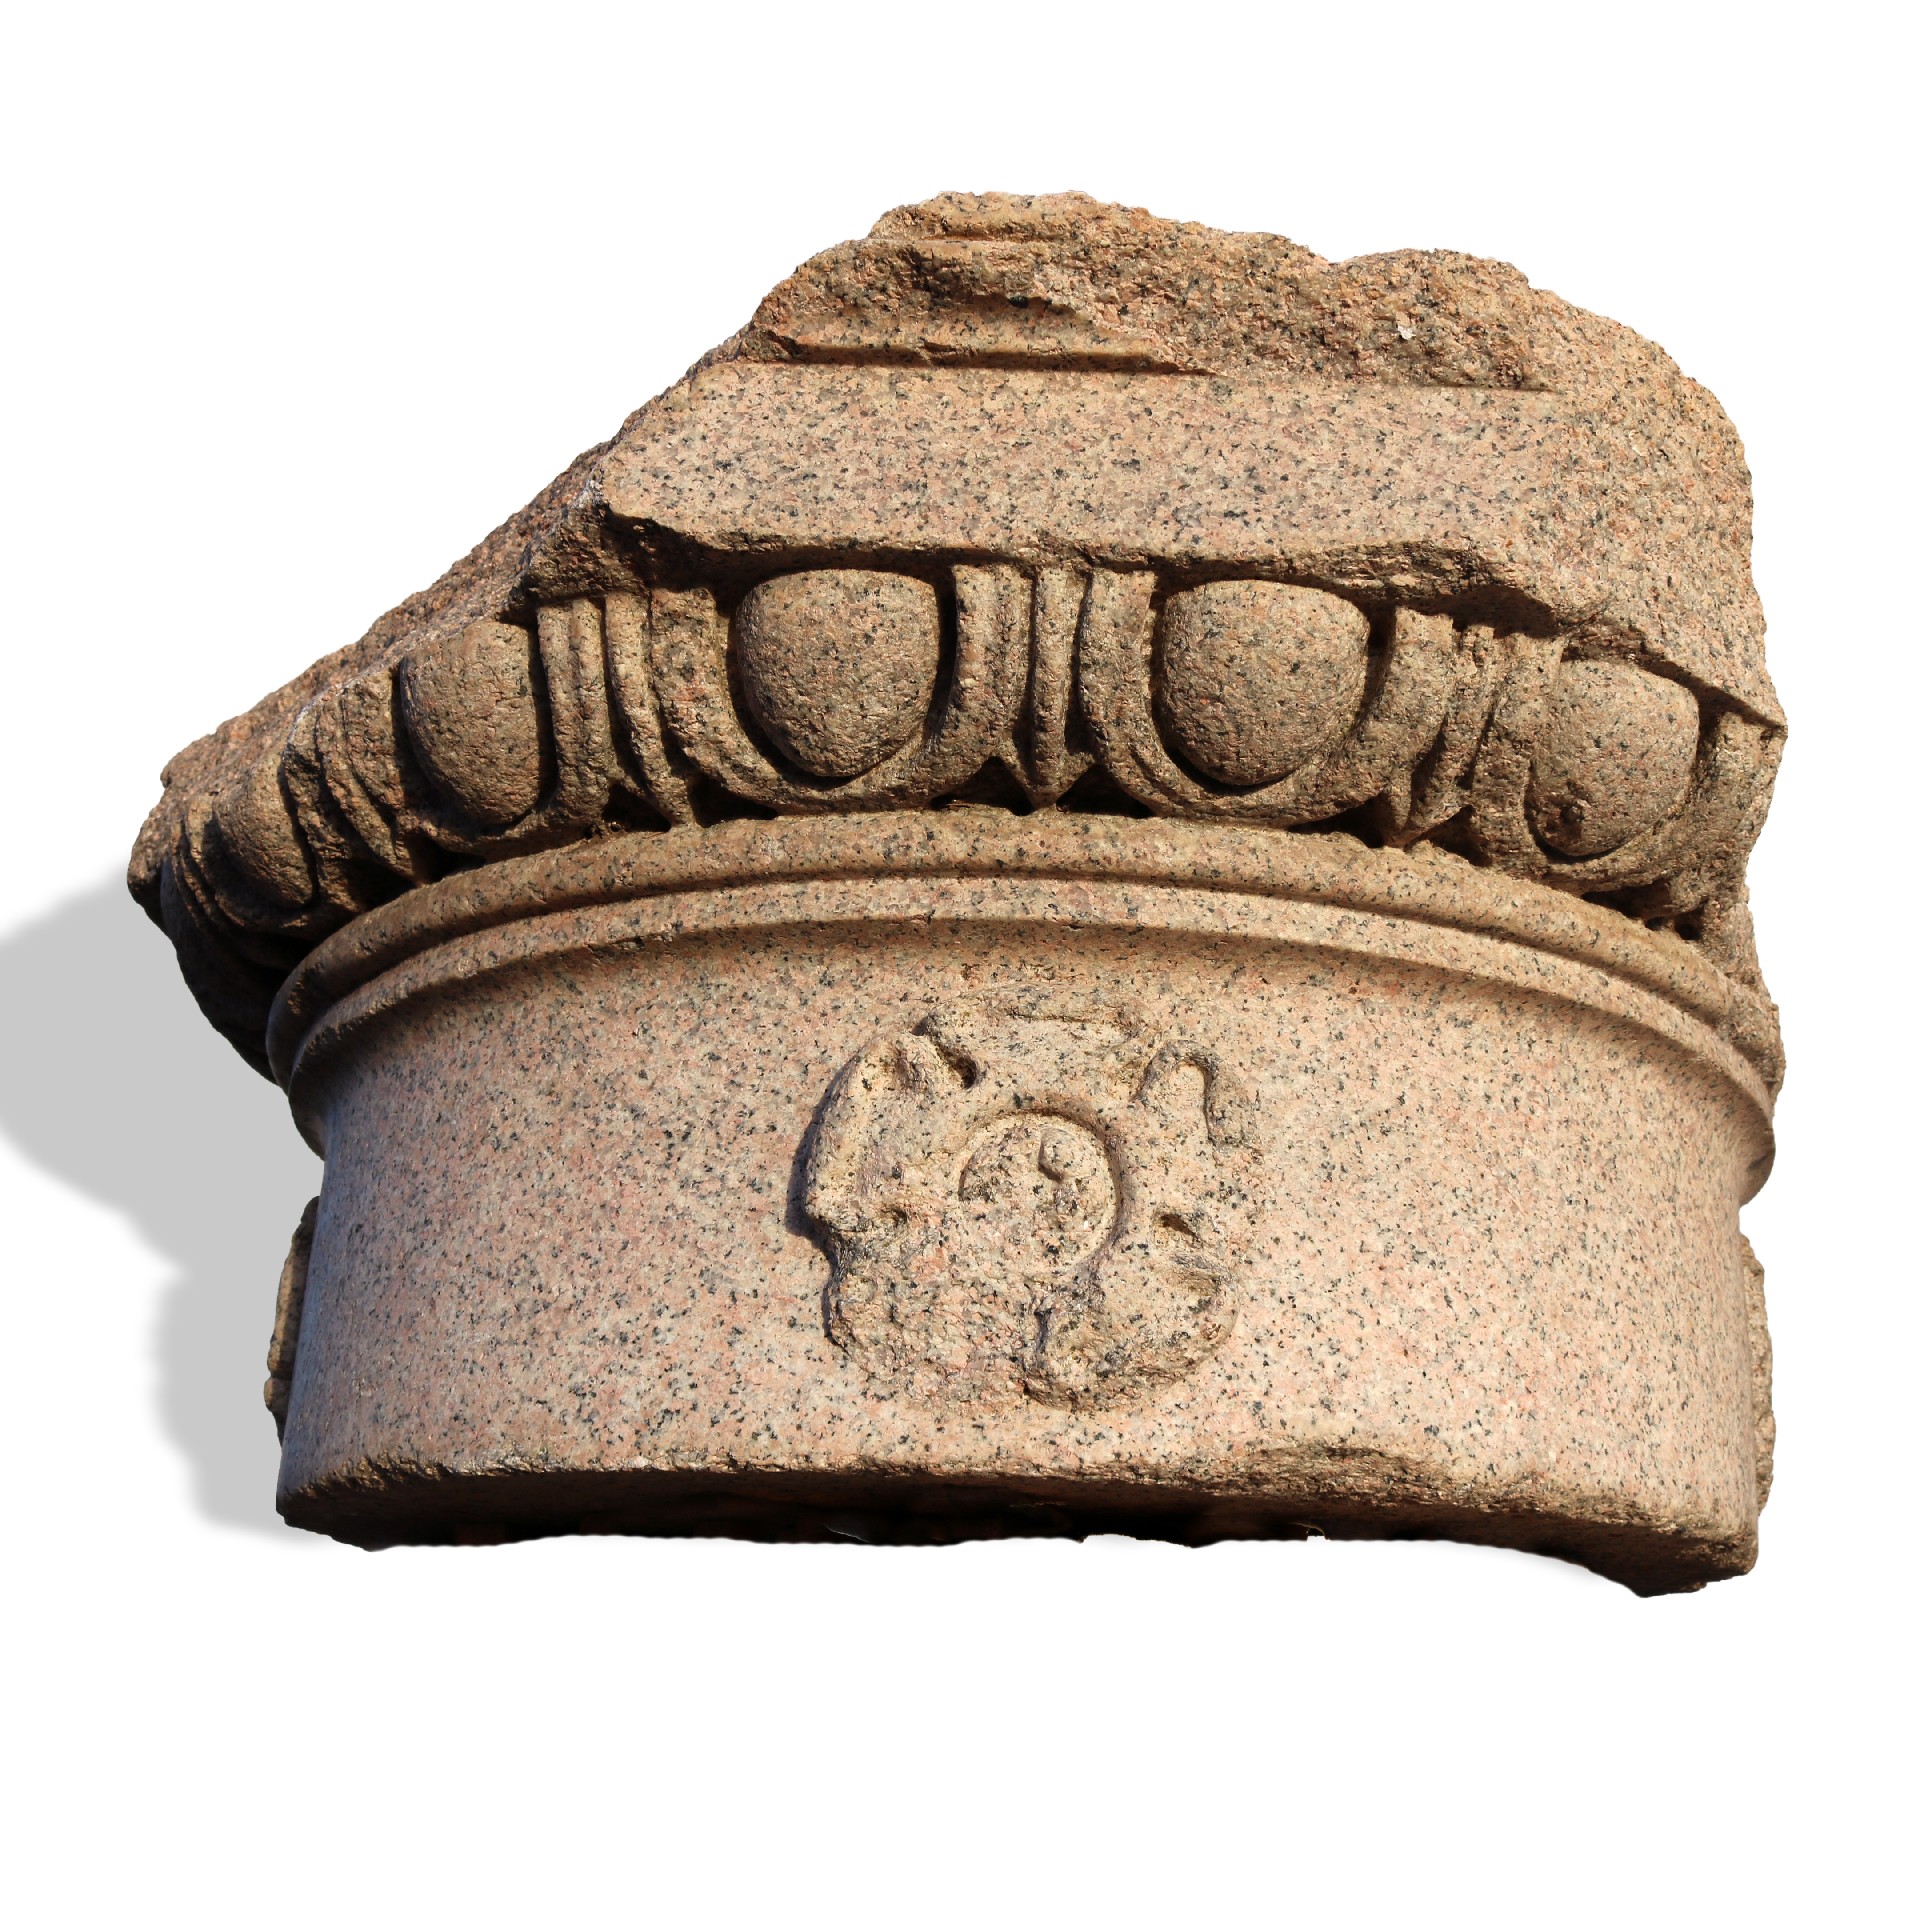 Antico capitello in granito rinascimentale. - Capitelli basi per colonne - Architettura - Prodotti - Antichità Fiorillo